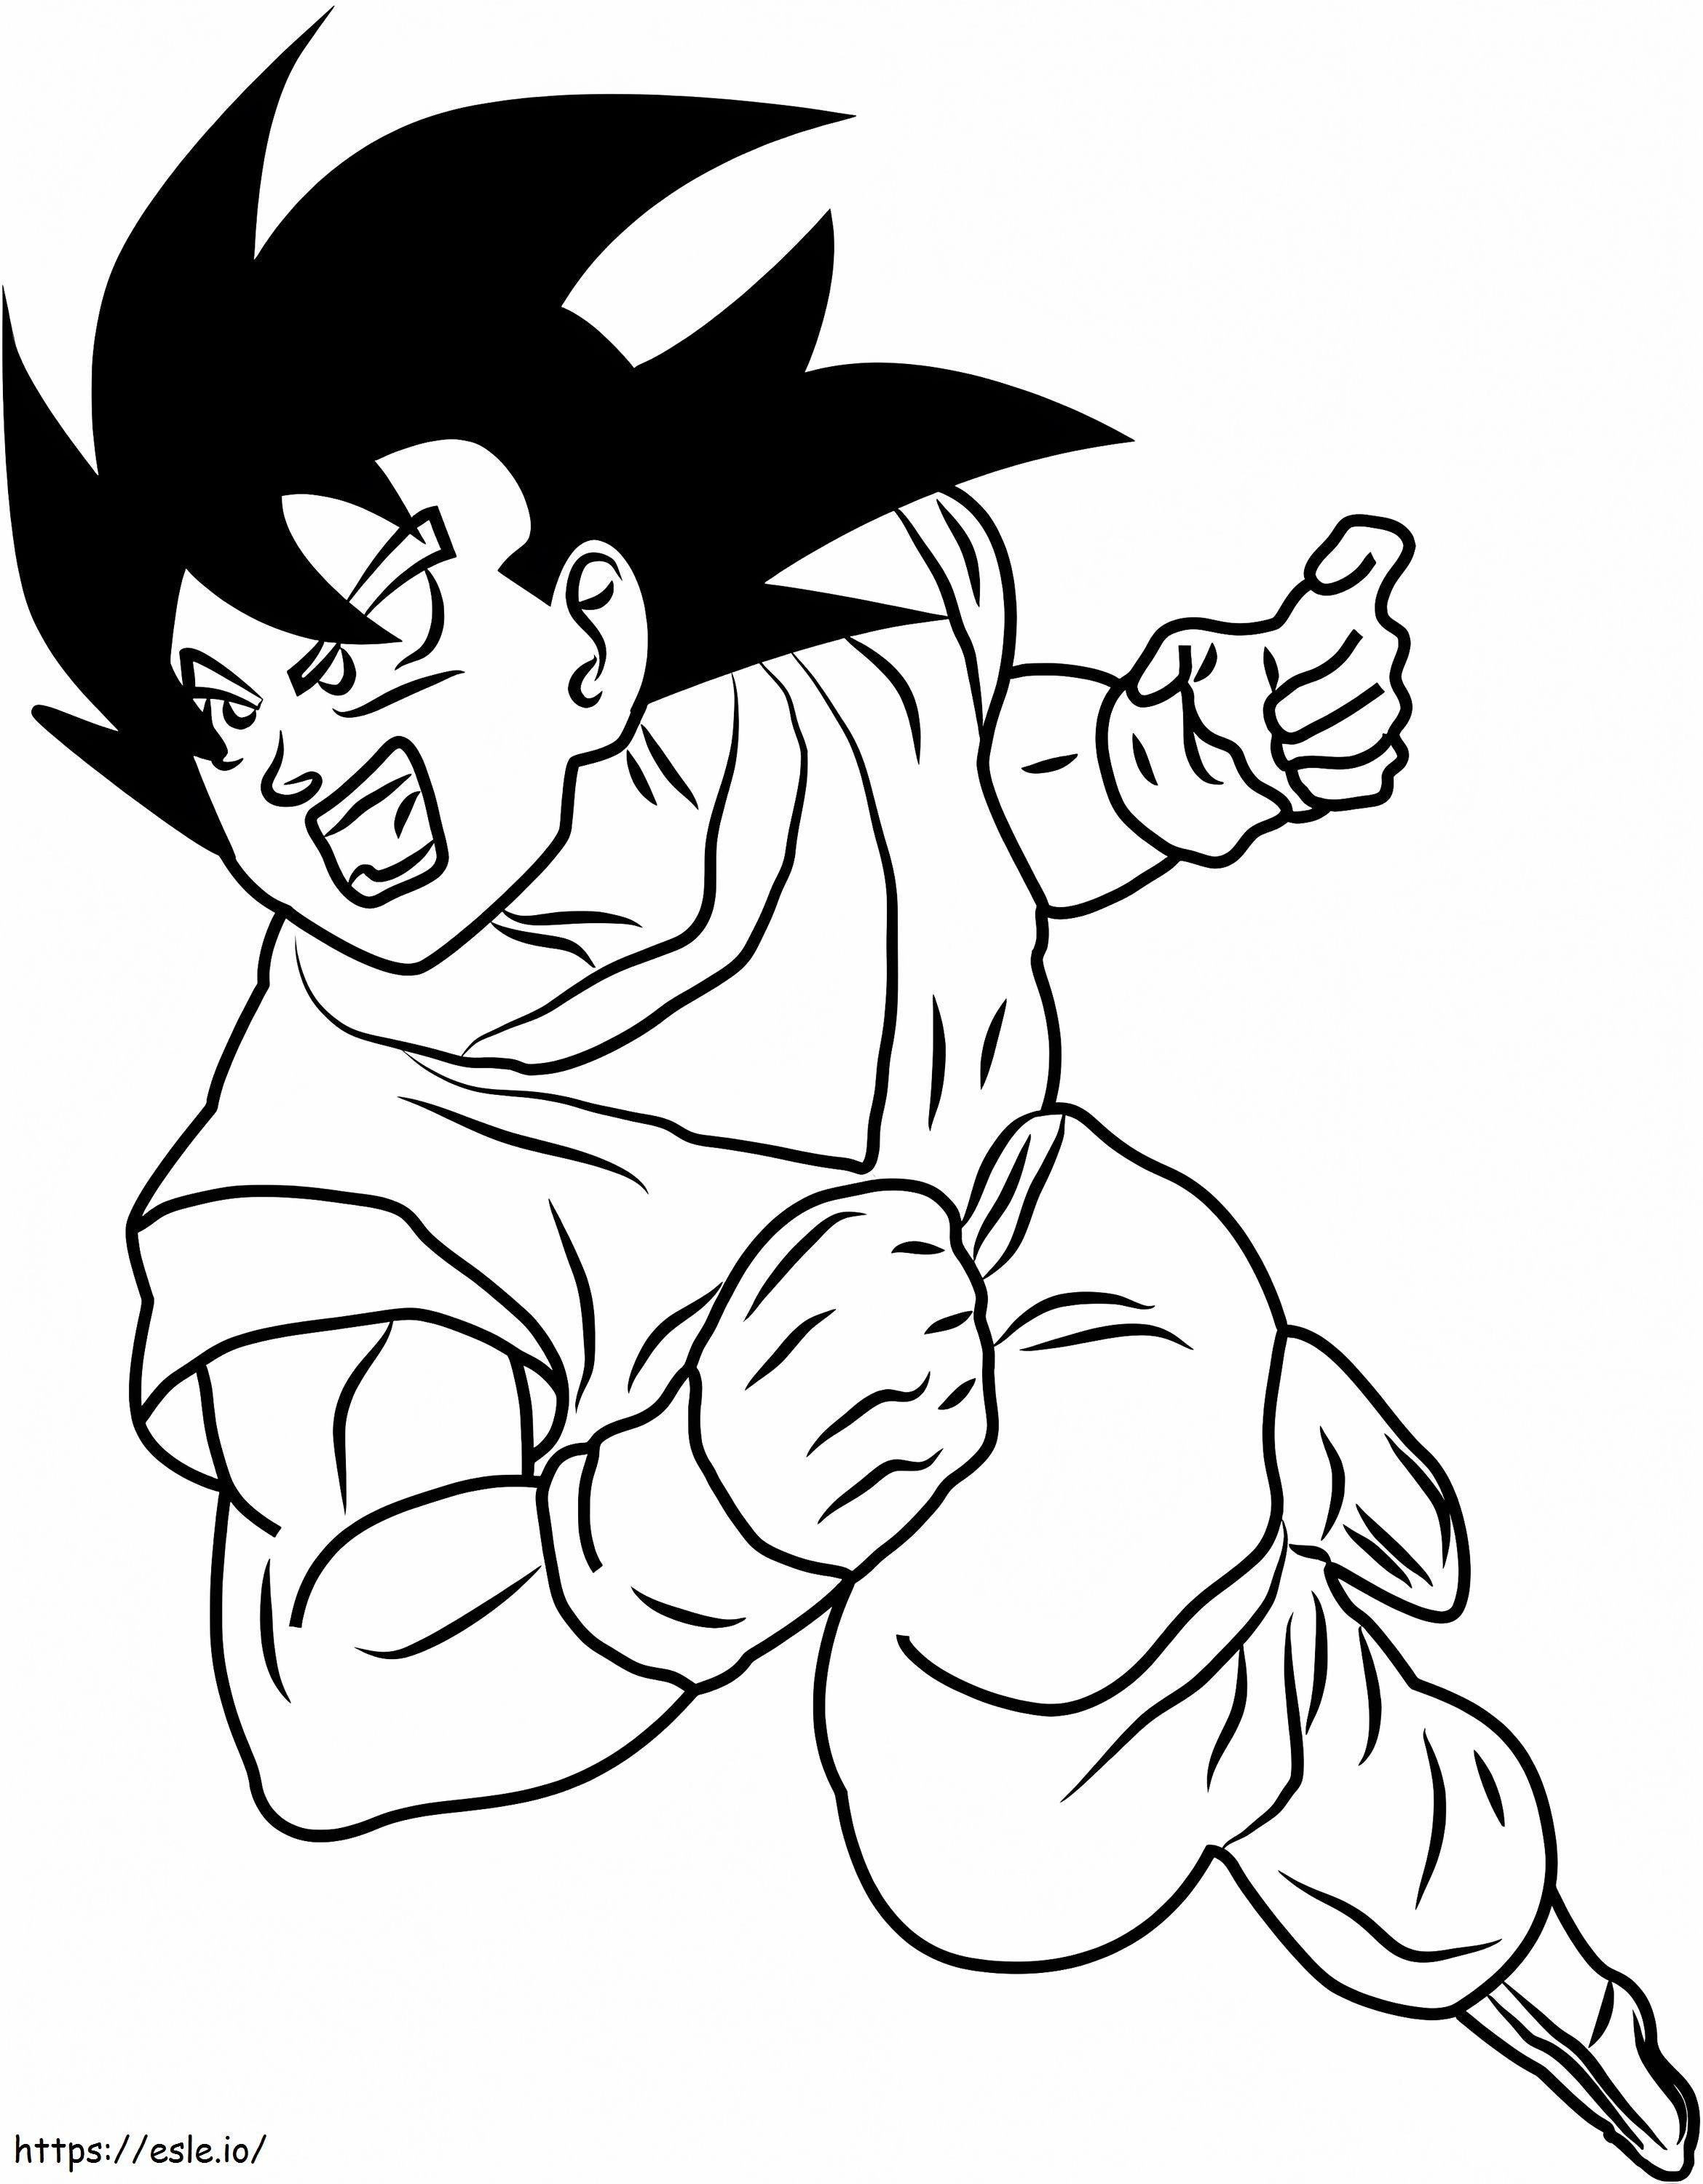 Atacurile lui Son Goku de colorat